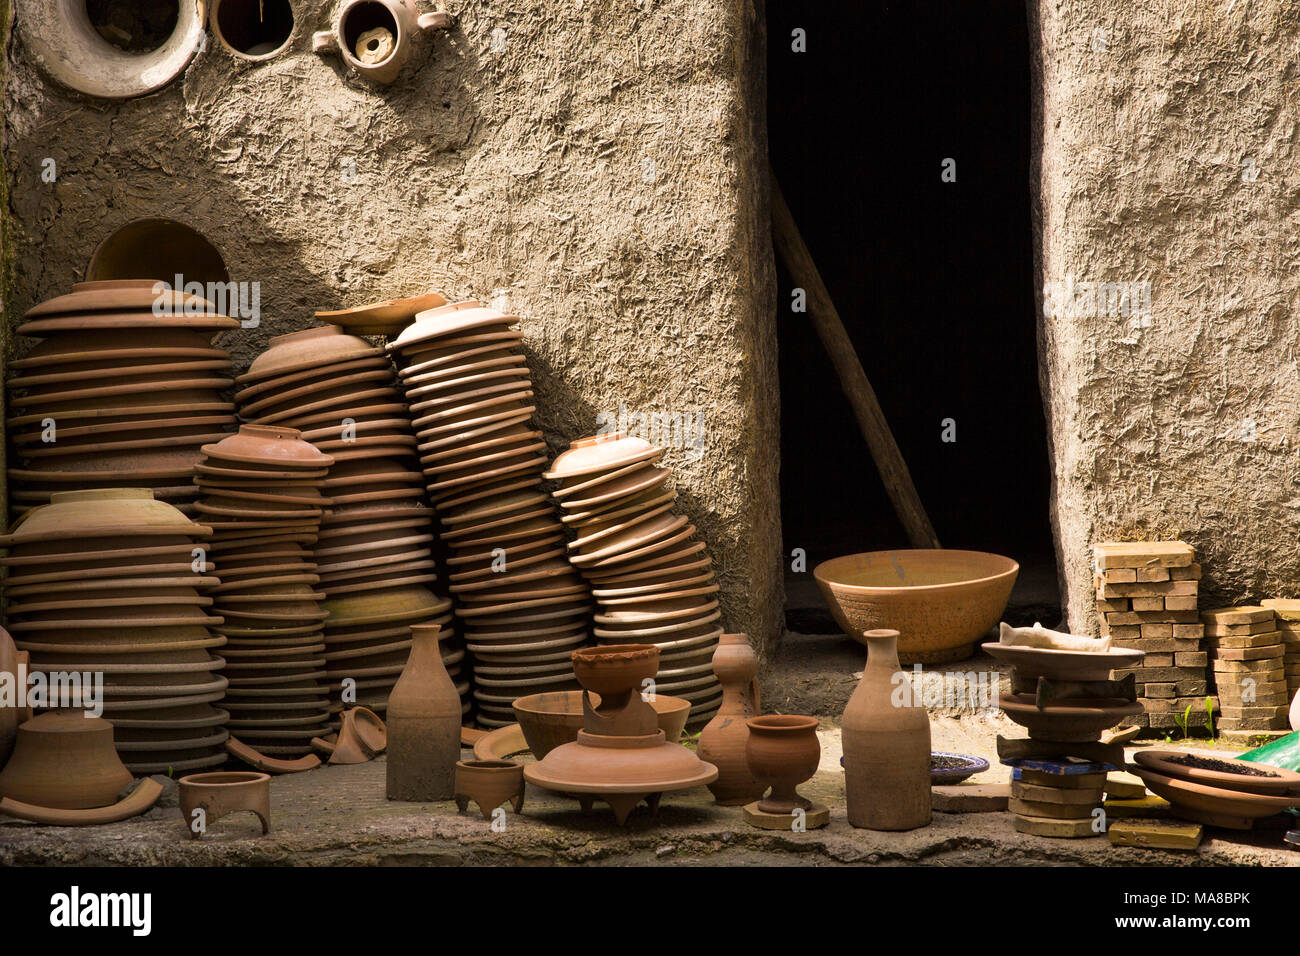 Il Marocco, Fes, Quartier des Potiers, Mosaique et Poterie de Fes, ceramiche, vecchio forno, Biscotto cotto pots Foto Stock